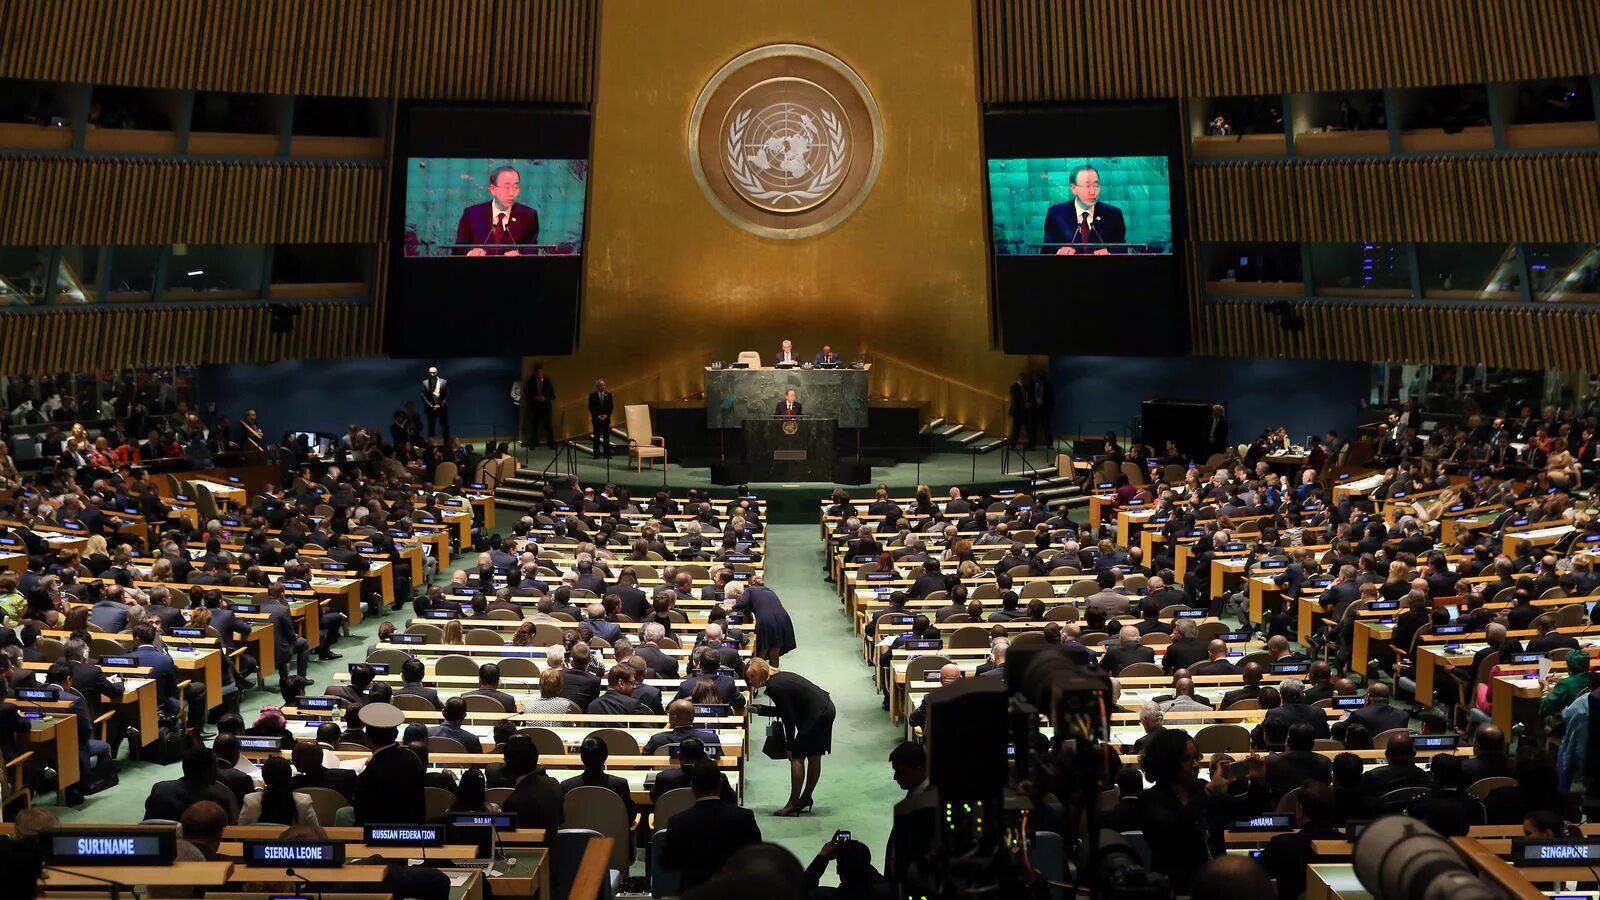 Сами оон. Генеральная Ассамблея ООН 2005. Трибуна Генассамблеи ООН. Зал заседания Генассамблеи ООН трибуна.